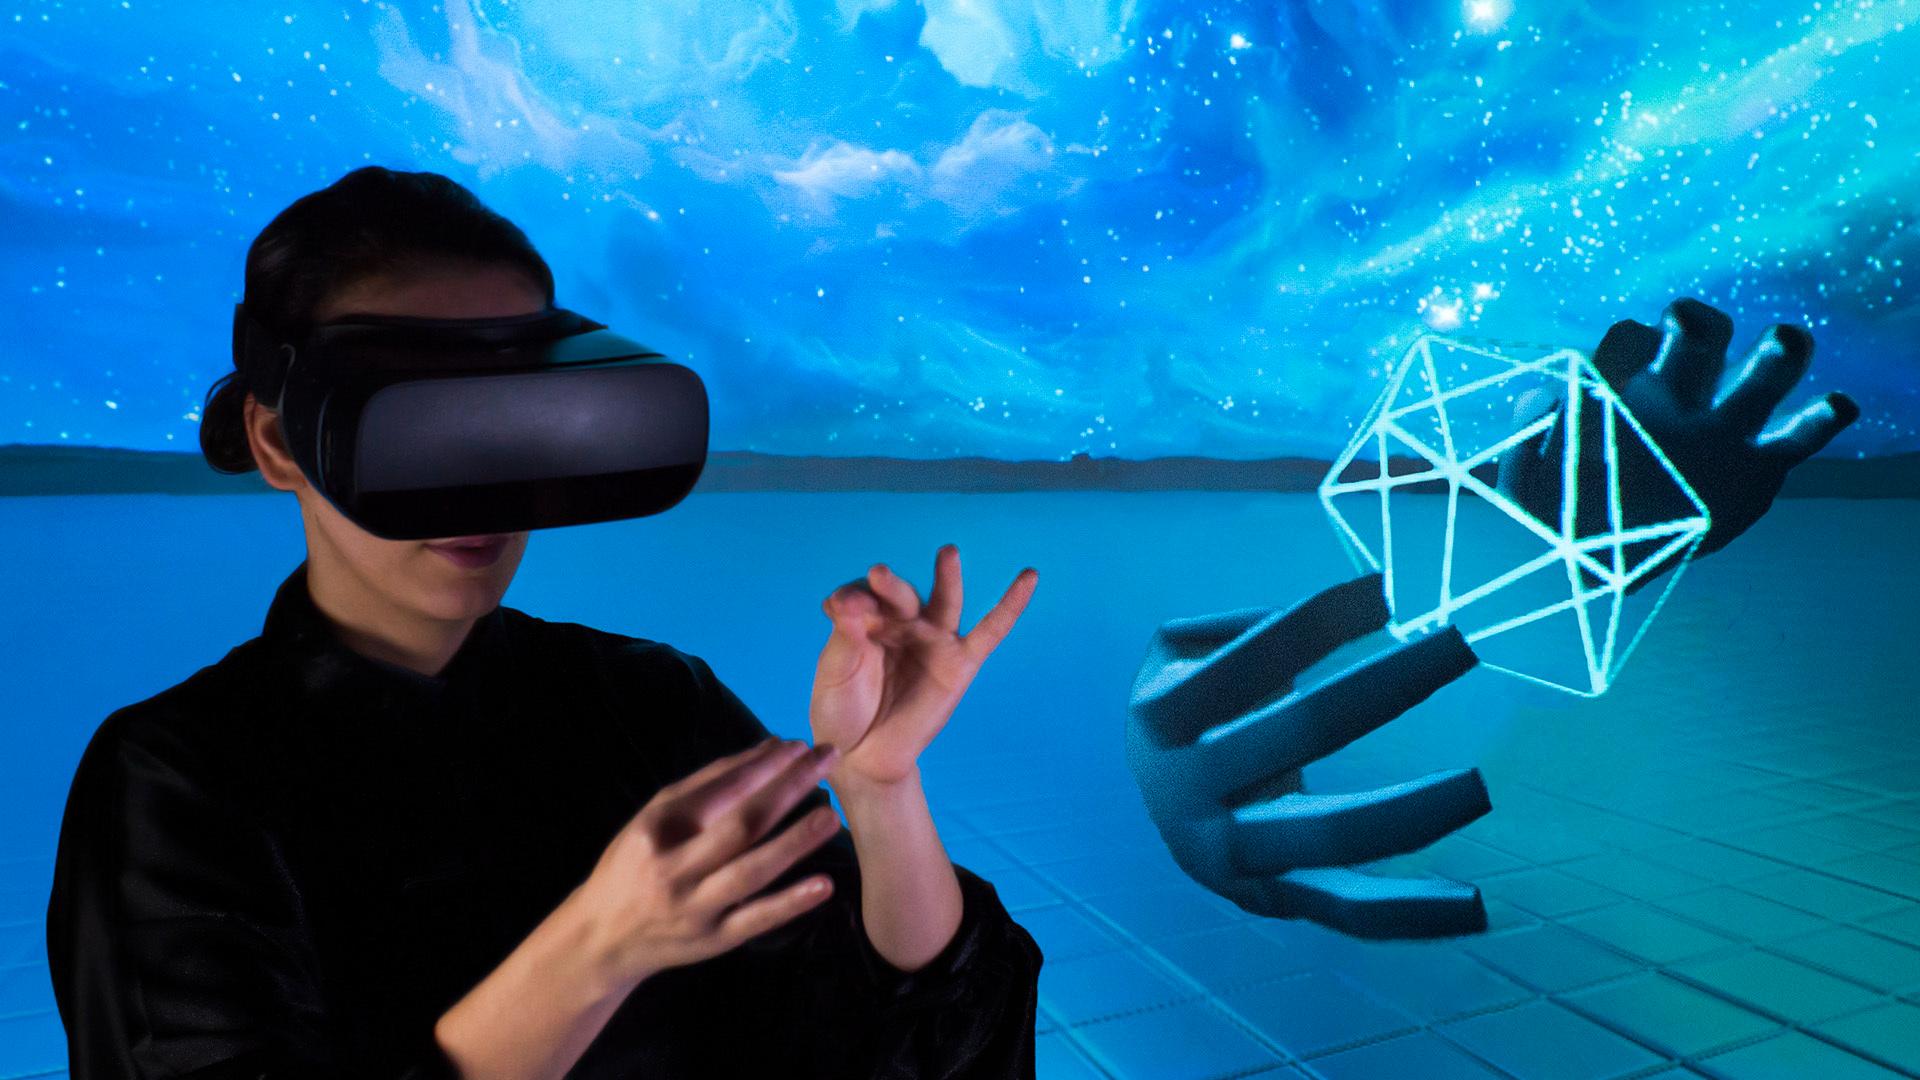 Med Leap Motion-teknologien kan du bruke hendene dine på en naturlig måte med mobile VR-briller. Dette er et urelatert illustrasjonsbilde fra Leap Motion.